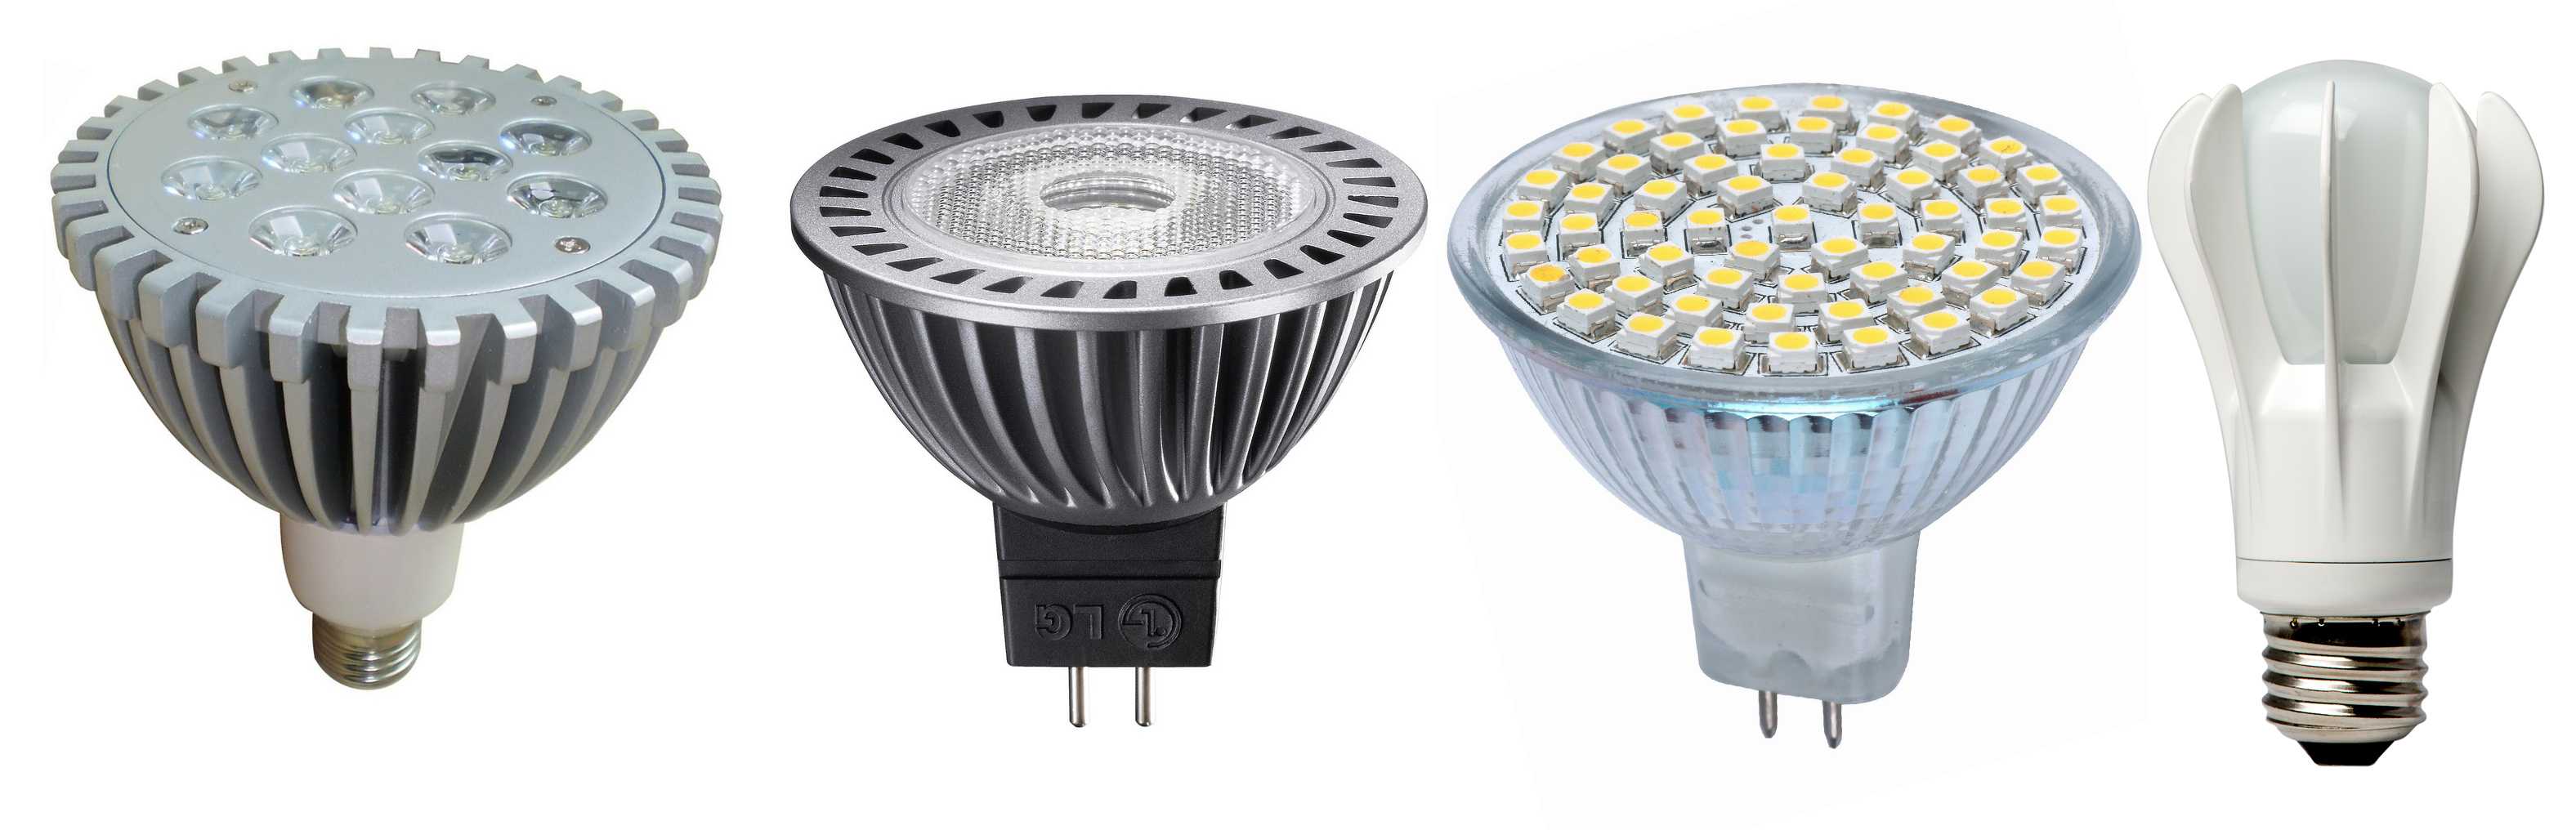 Как выбрать светодиодные лампы для дома: основные критерии